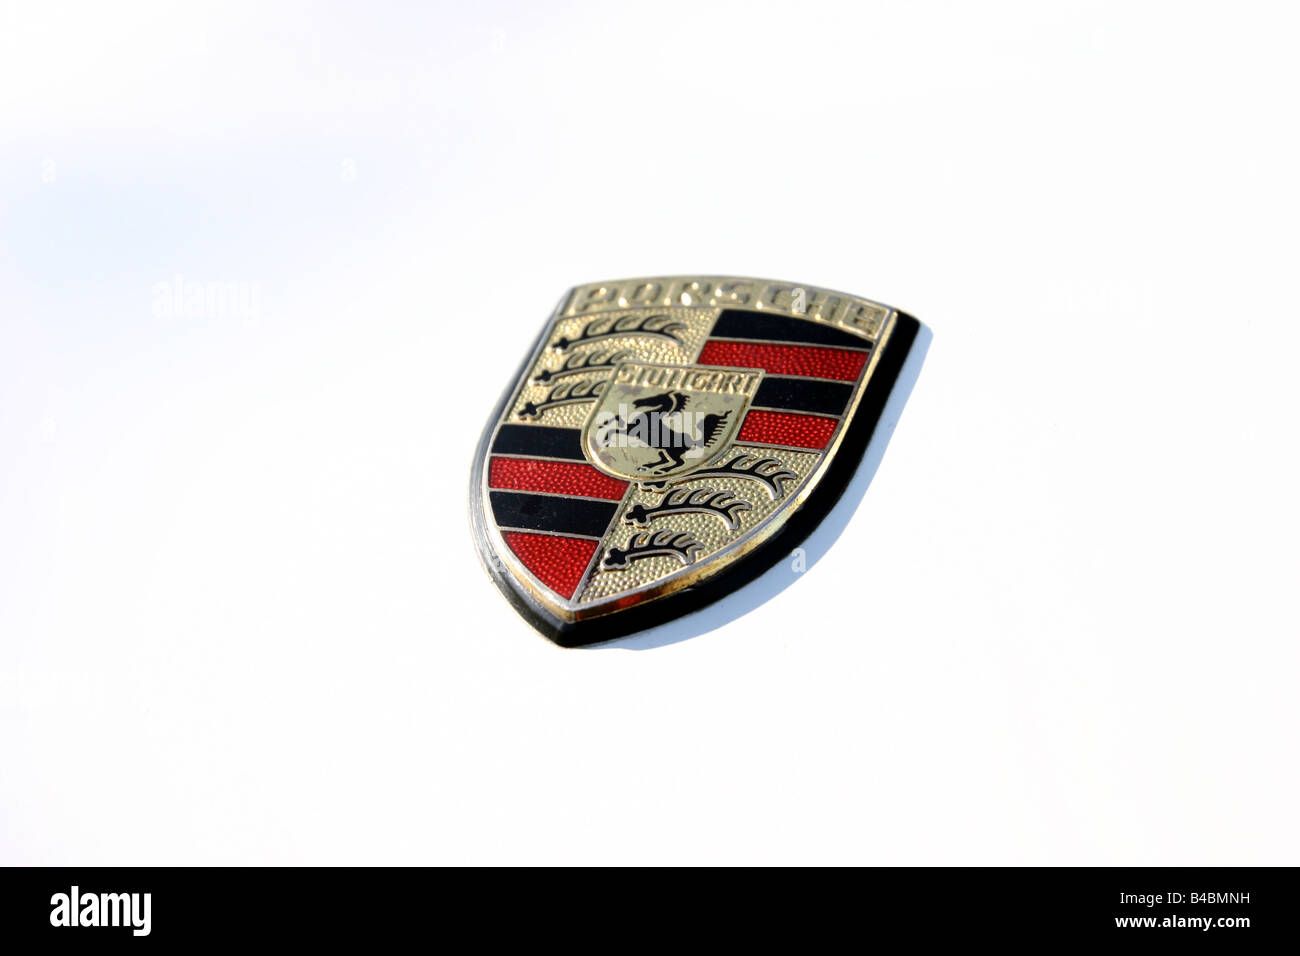 Voiture, Porsche 911 Carrera RS 2.7, roadster, blanc, l'année de modèle 1973, coupé/cabriolet, Youngtimer, FGHDS, affichage détaillé, logo de l'entreprise, Banque D'Images